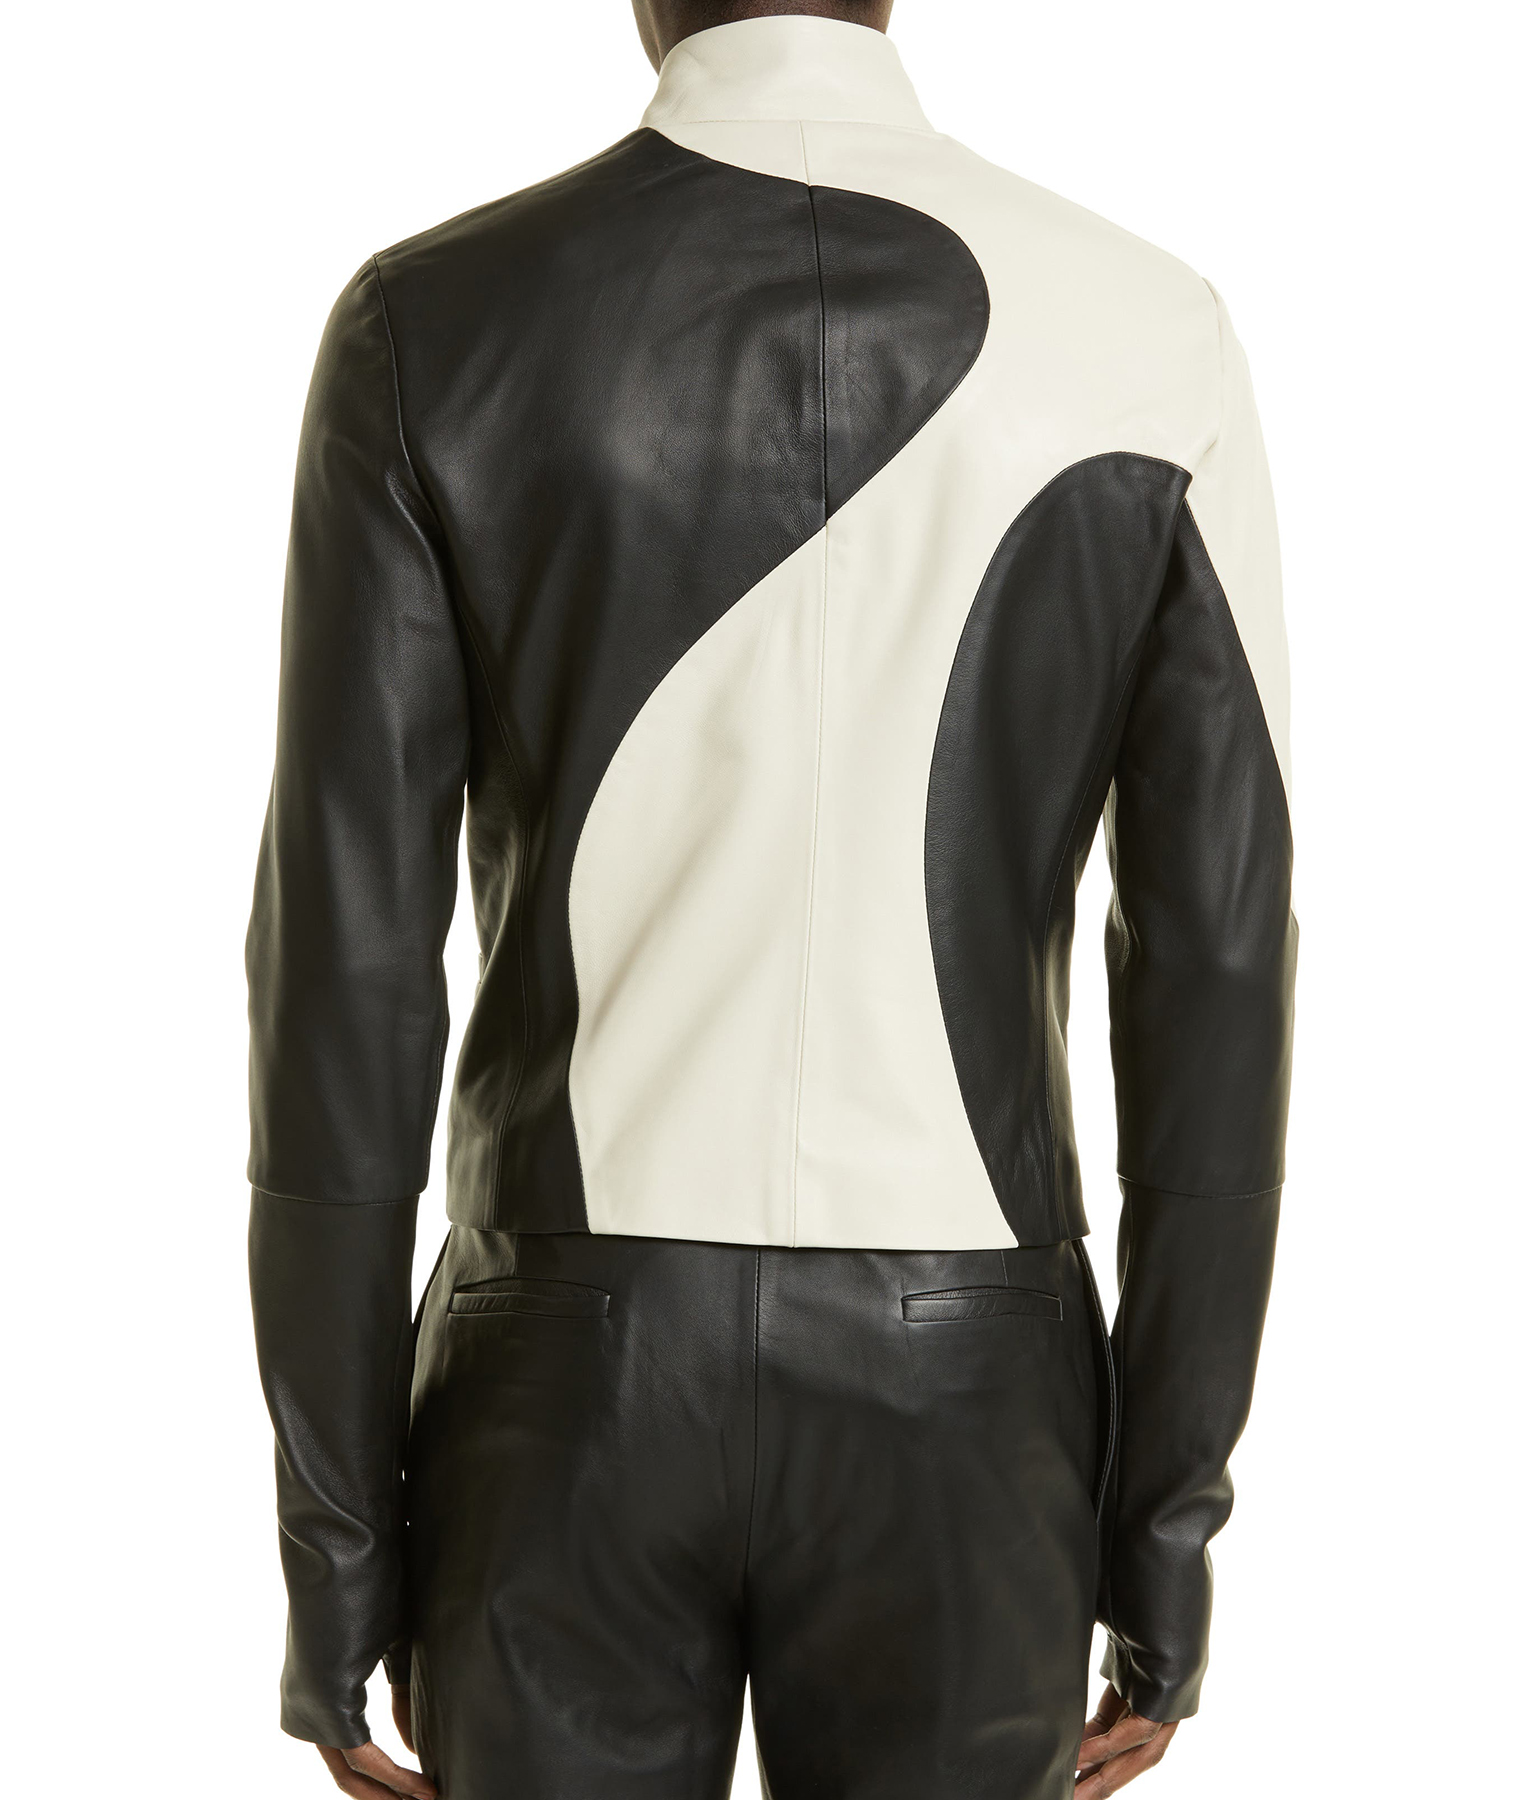 Usher Black and white Leather Jacket3